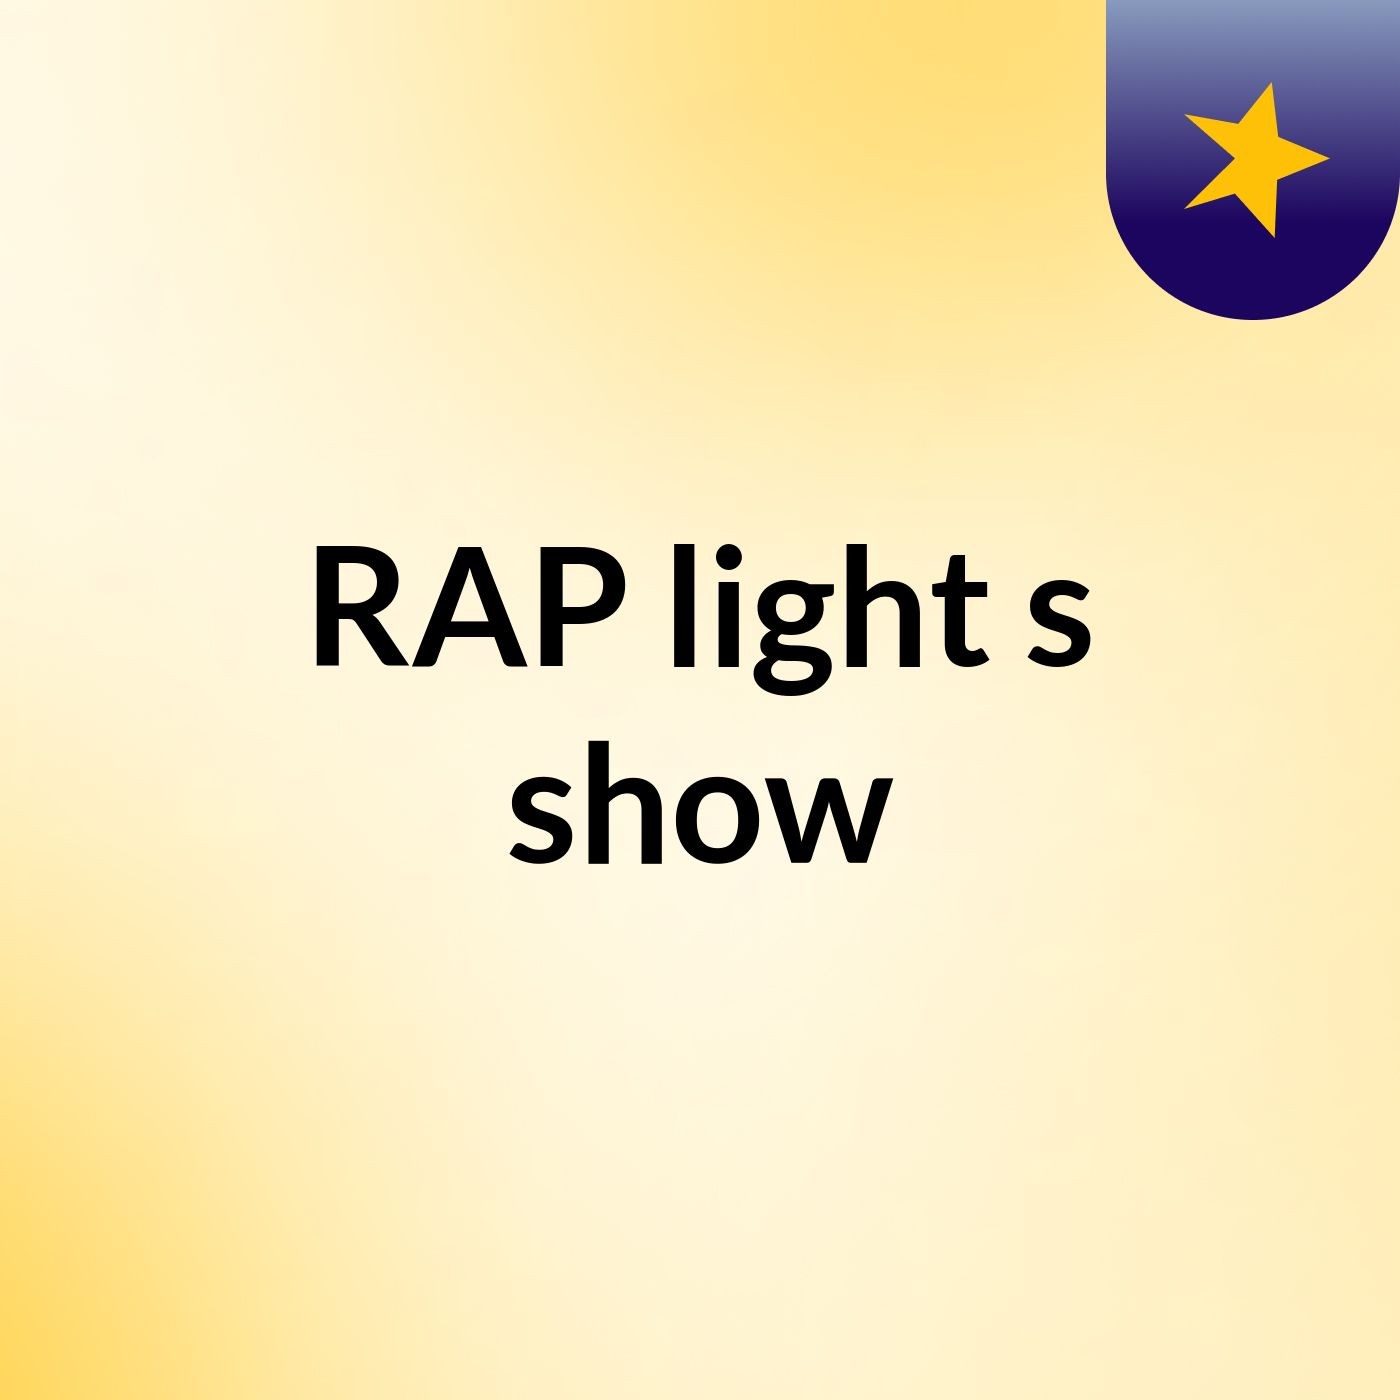 RAP light's show